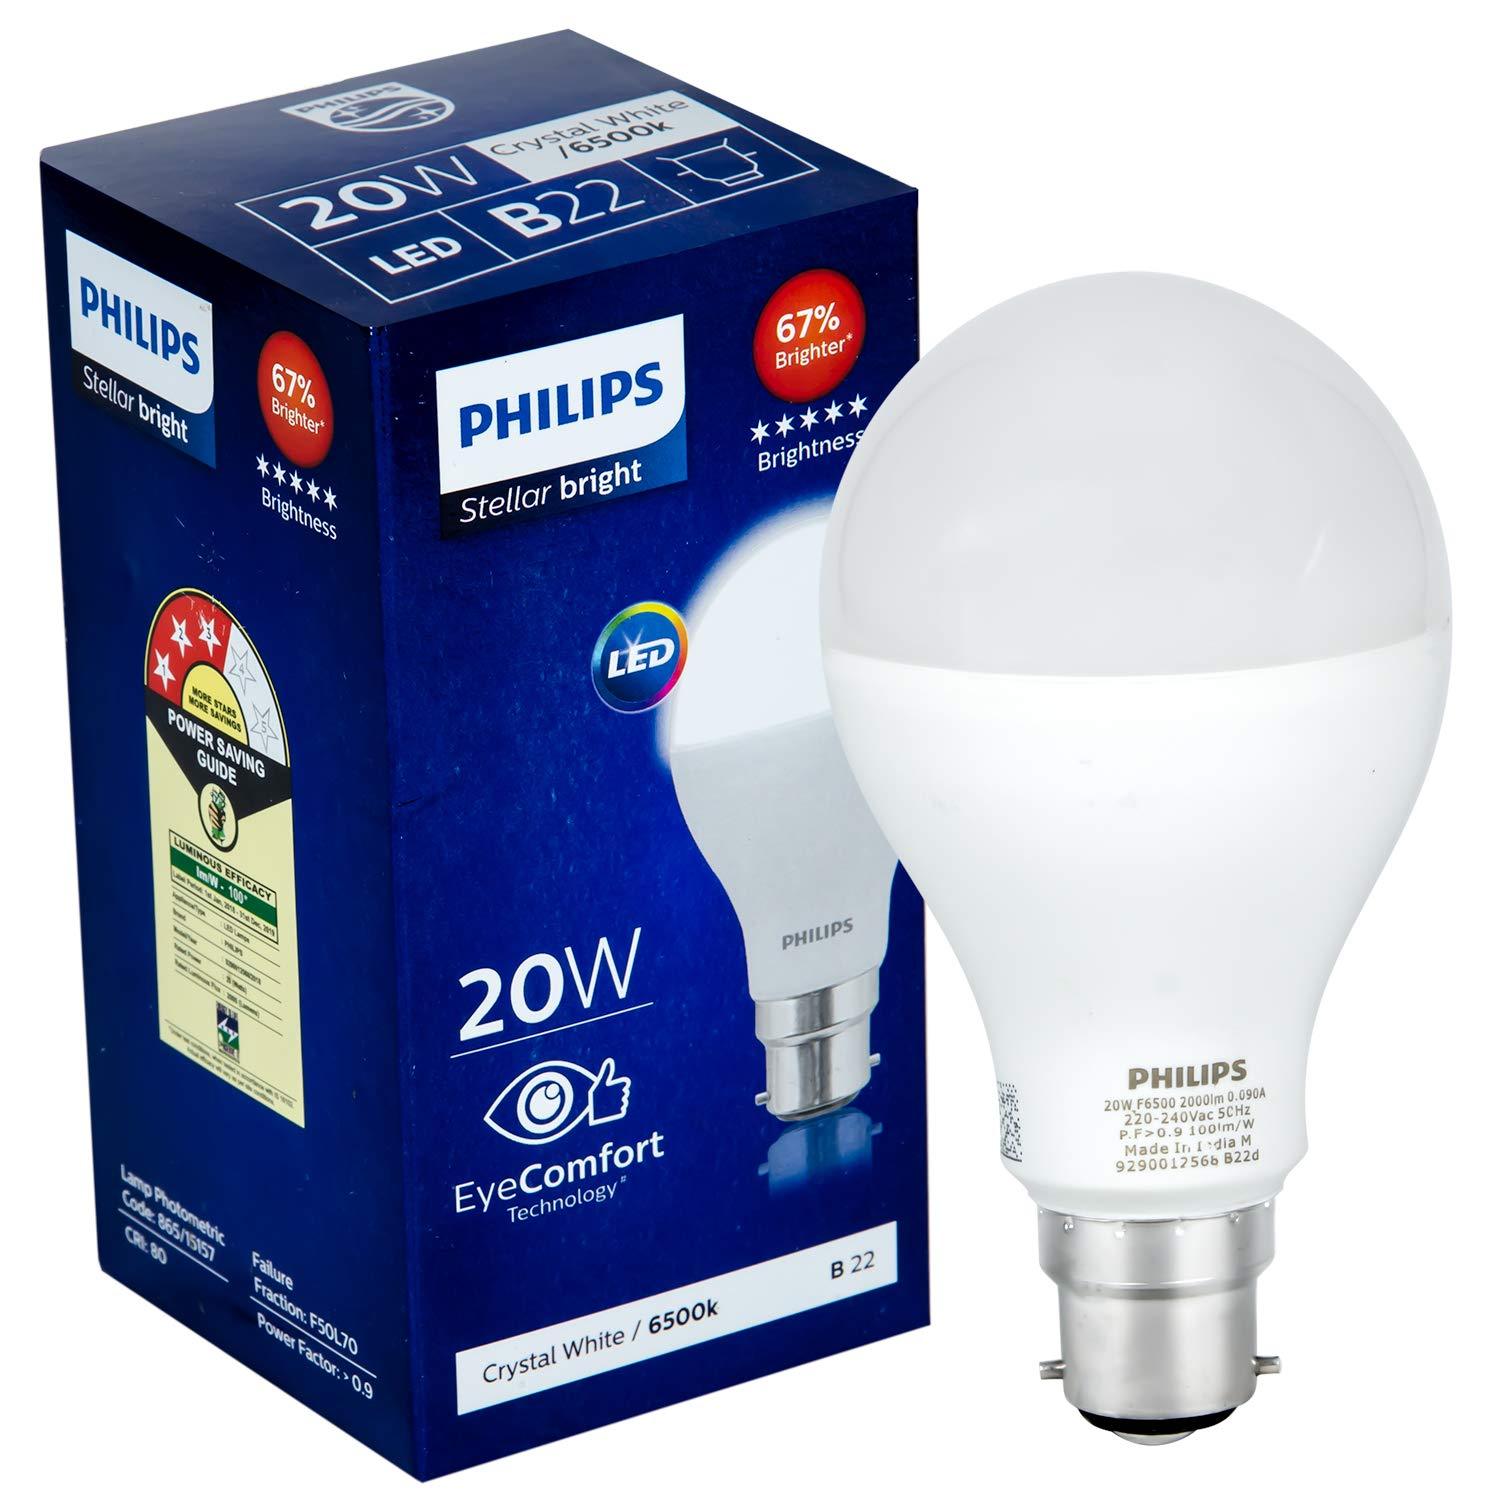 Philips Stellar Bright 20-Watt B22 LED Bulb (Cool Day Light/Crystal White), Pack of 1-LED Light Bulbs-dealsplant